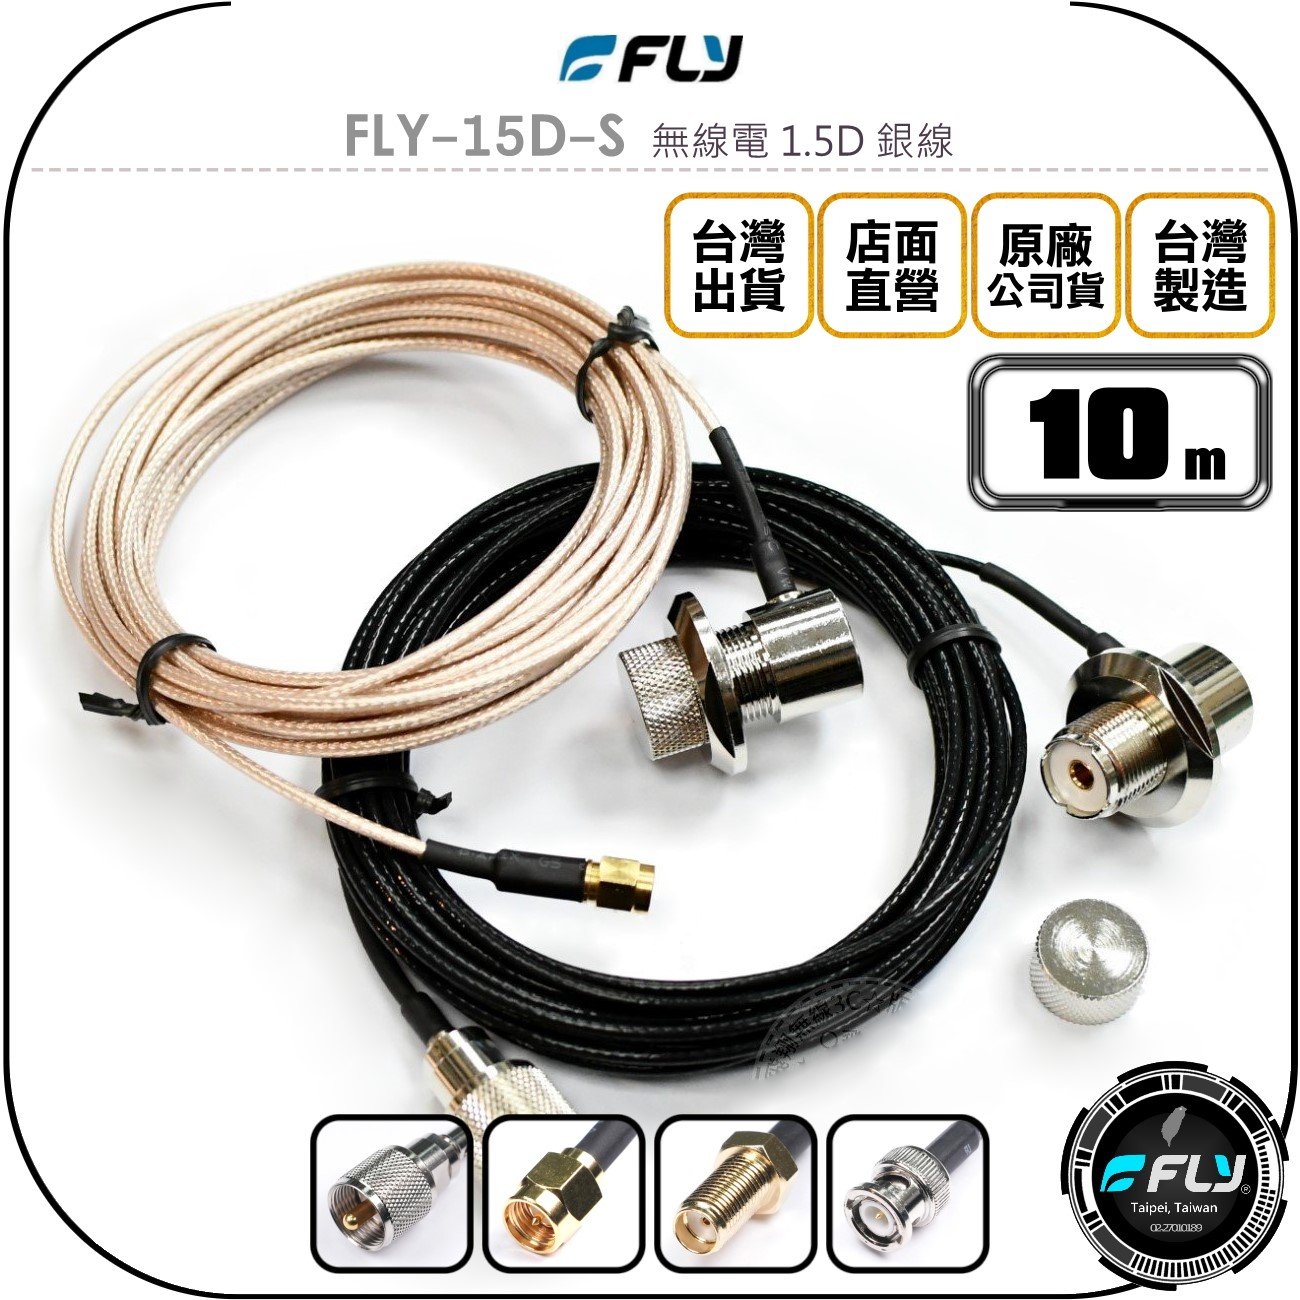 《飛翔無線3C》FLY FLY-15D-S 無線電 1.5D 銀線 10m◉公司貨◉訊號線◉對講機收發◉車機外接傳輸